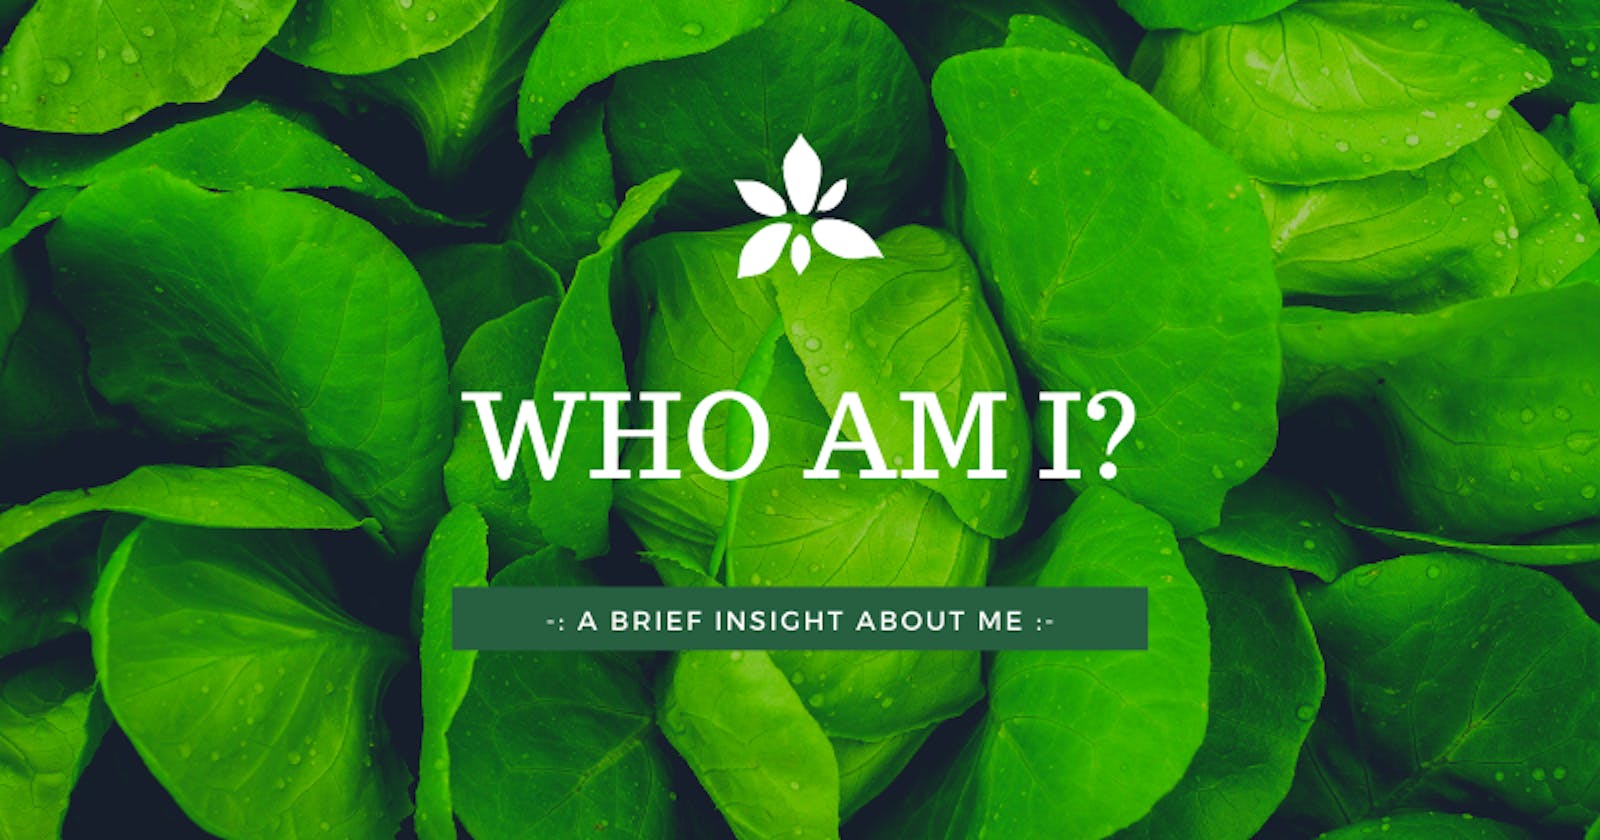 hello hashnode : Who am I?